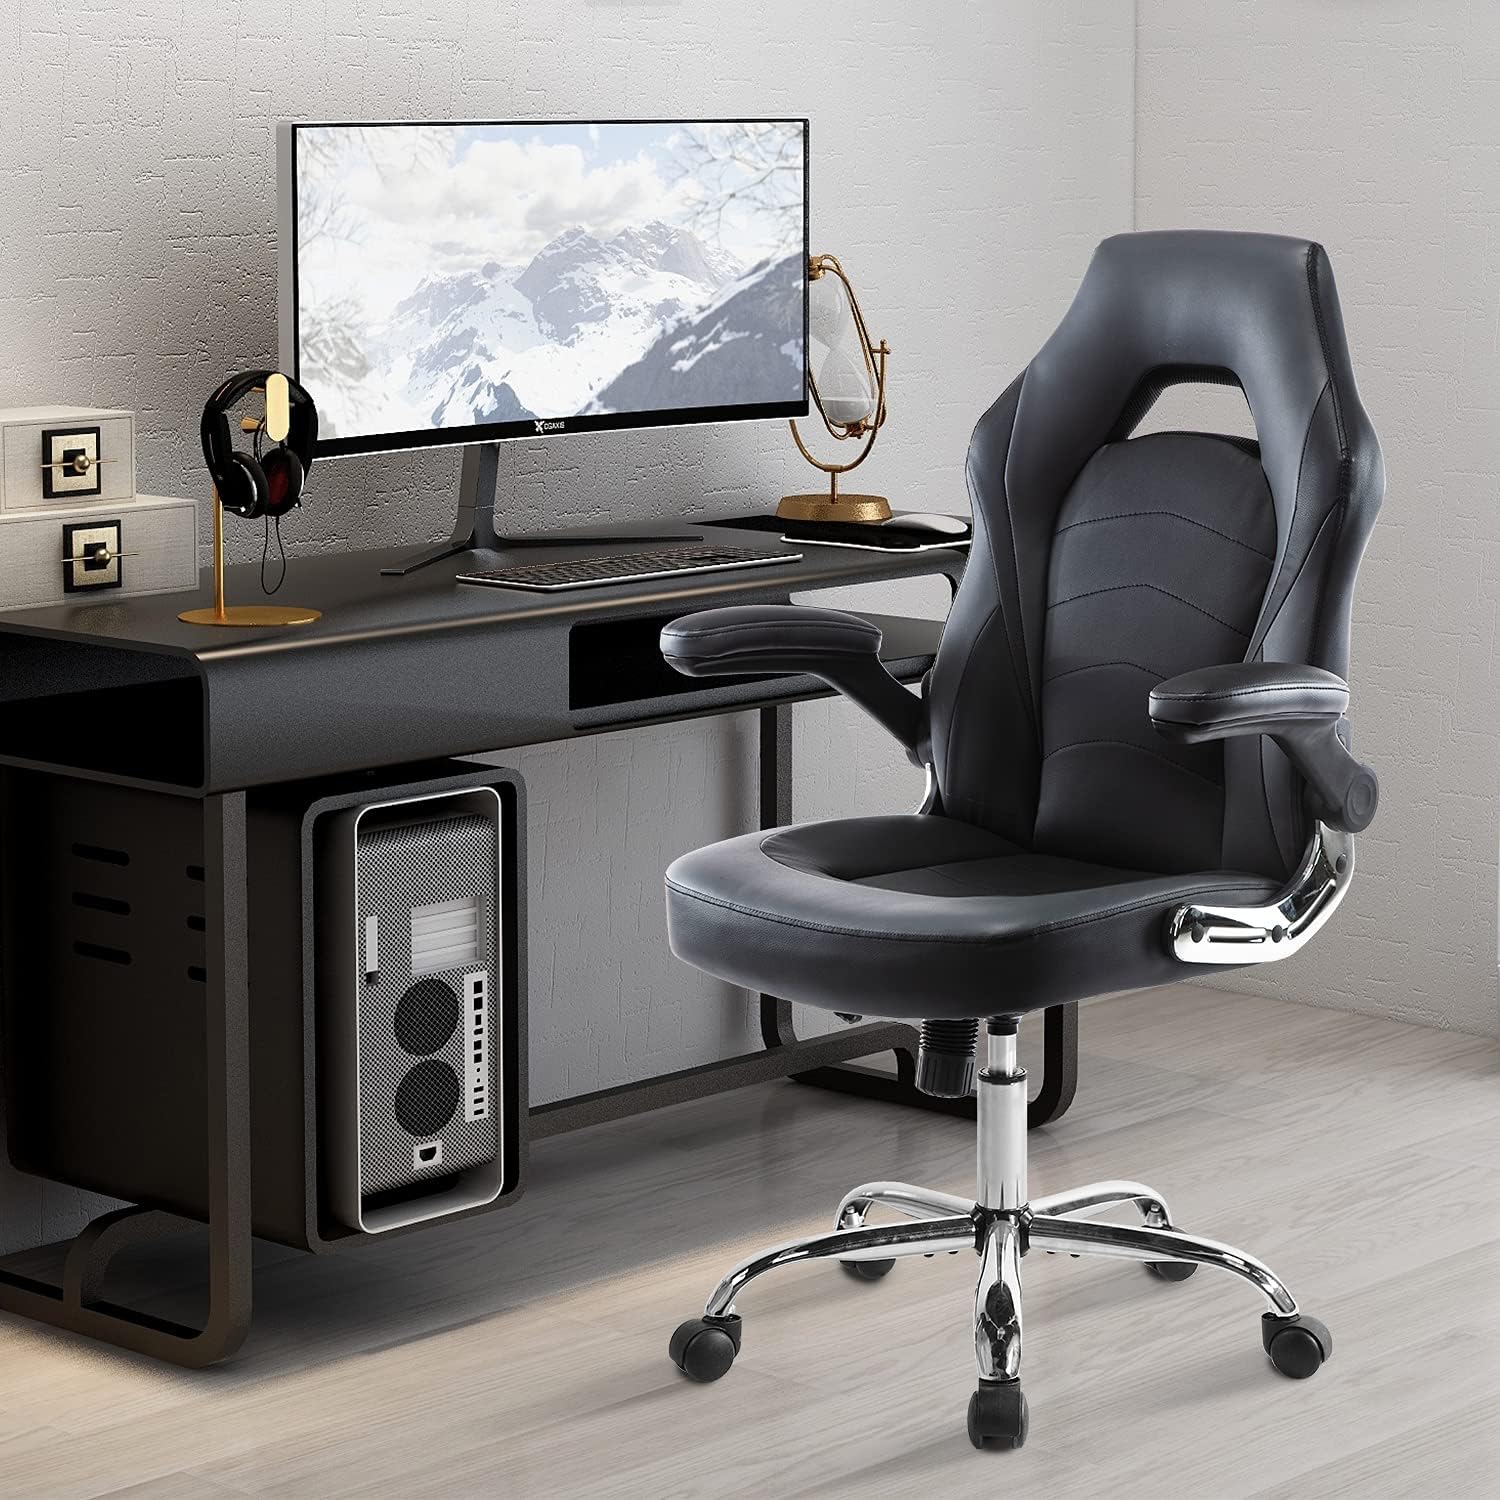 Silla de oficina, silla de juegos, silla de escritorio, silla ergonómica de